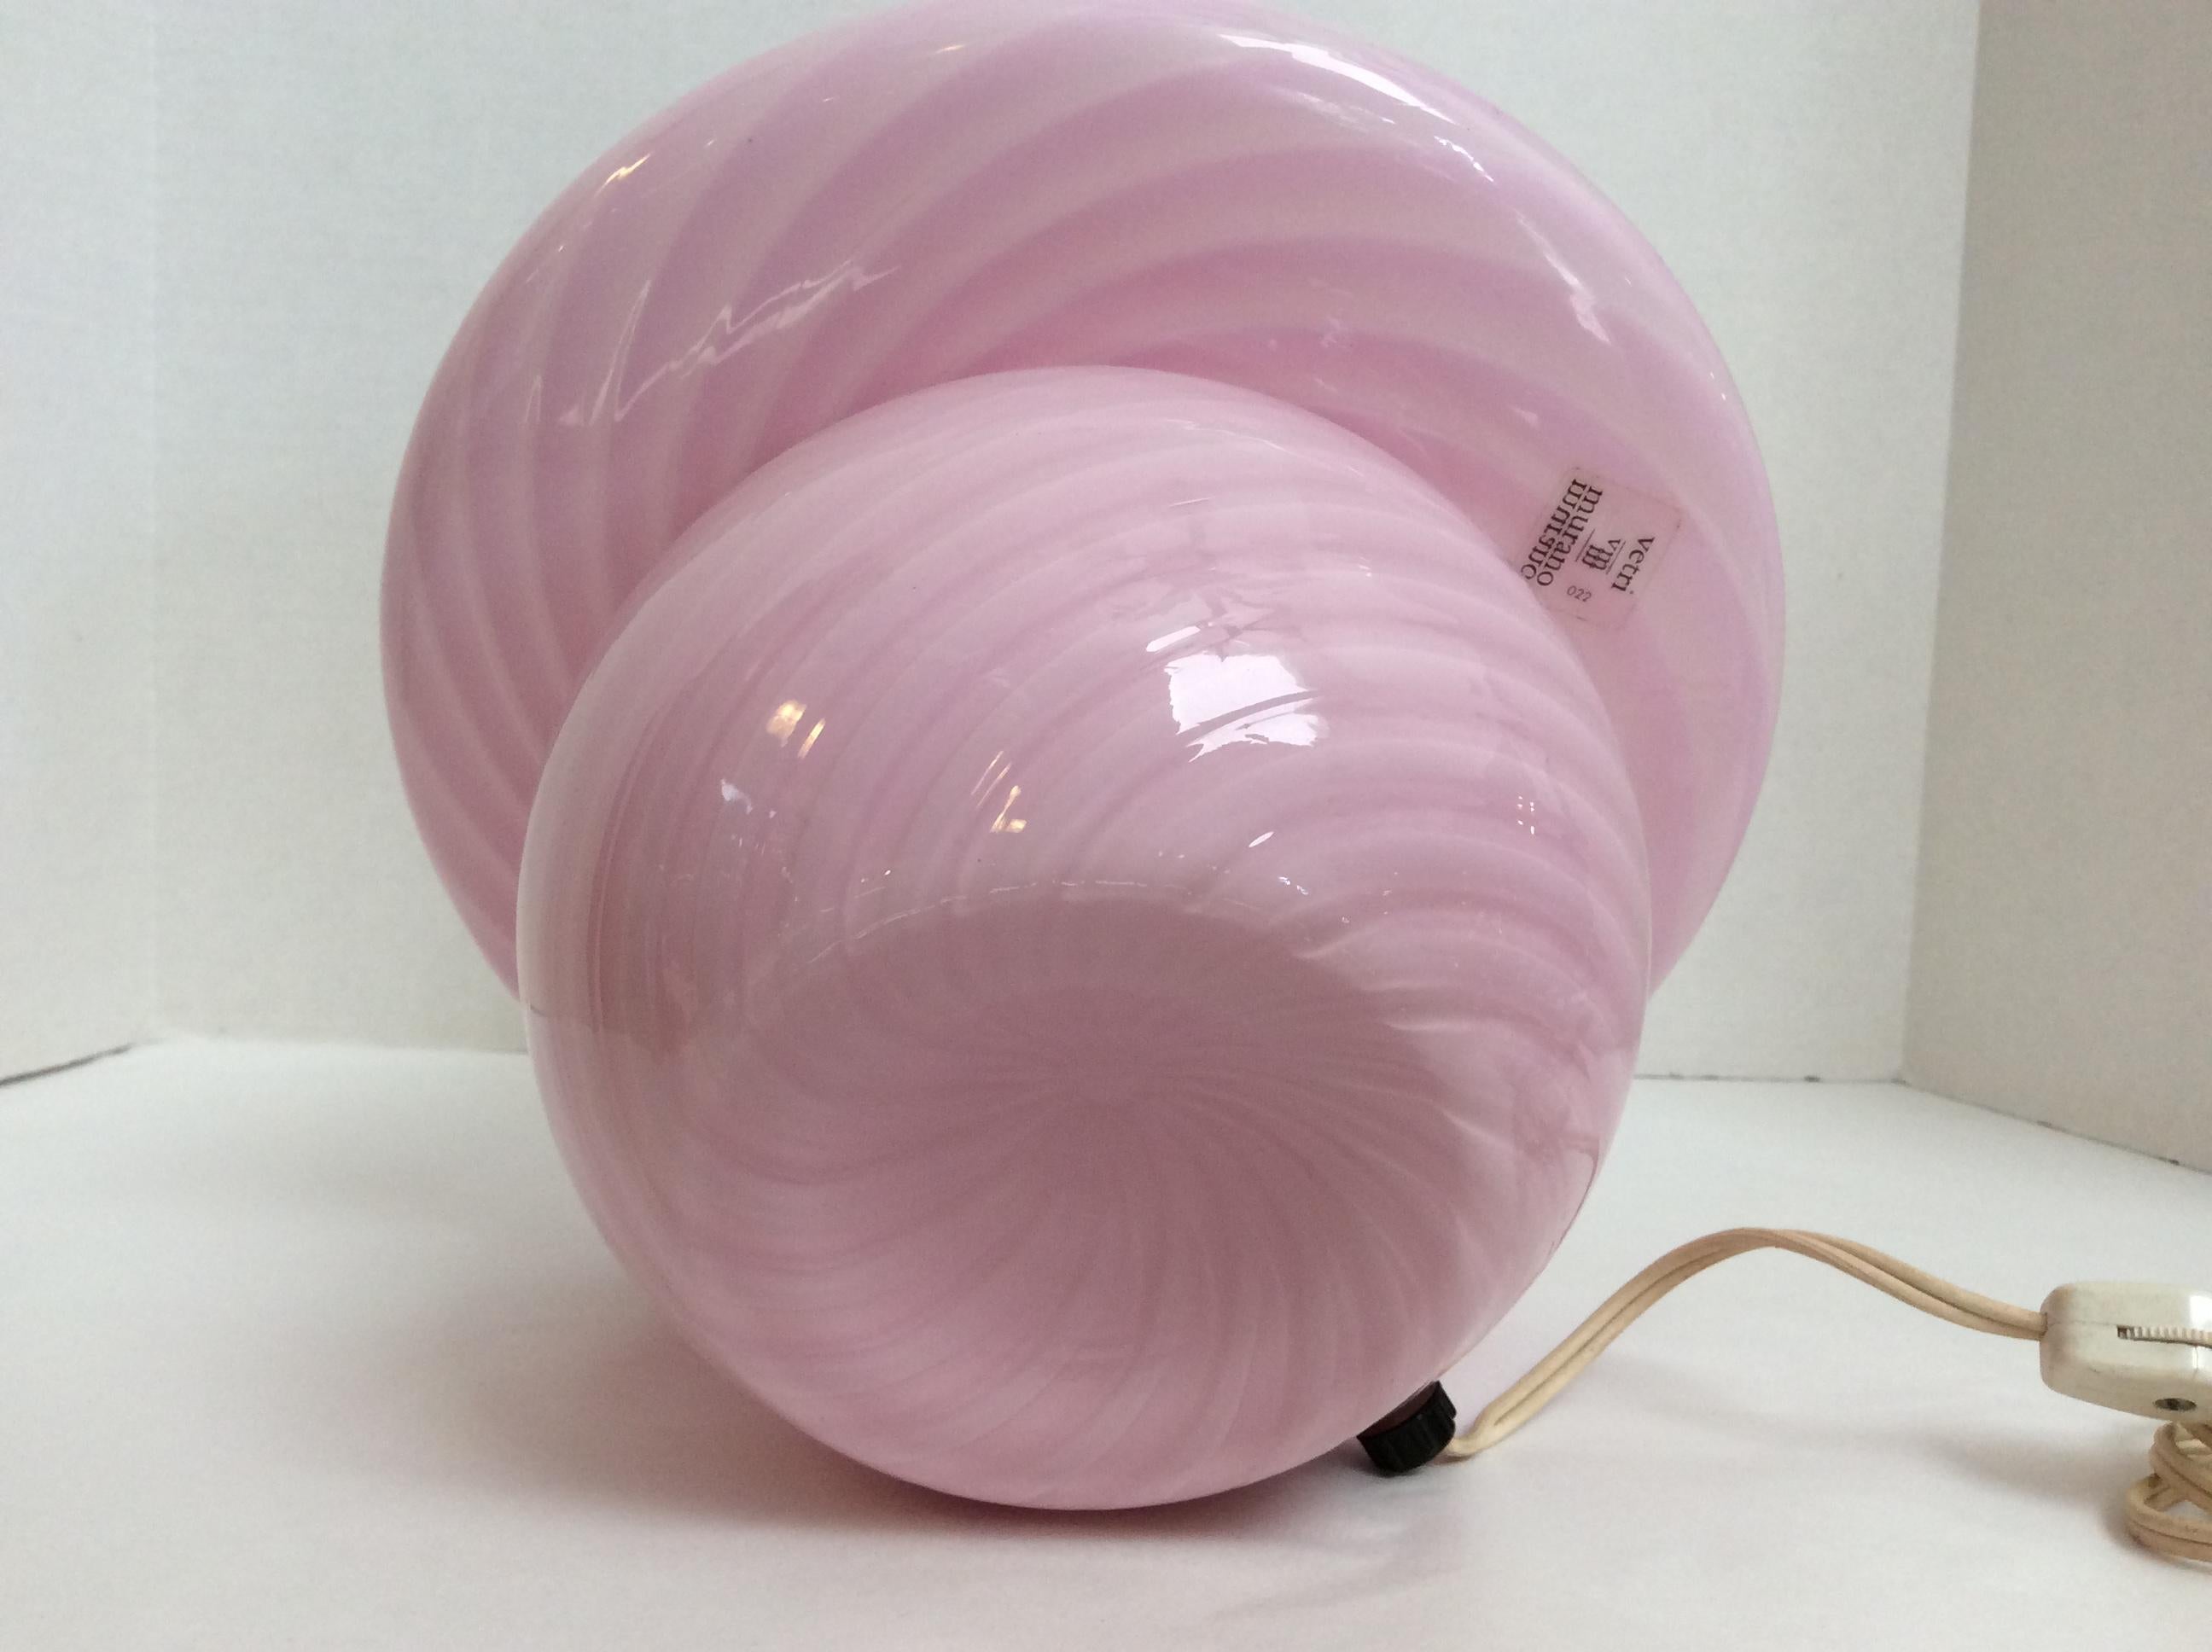 Vetri Murano Glass Mushroom Table Lamp, Pink Swirl Design, Mid-Century Modern 1